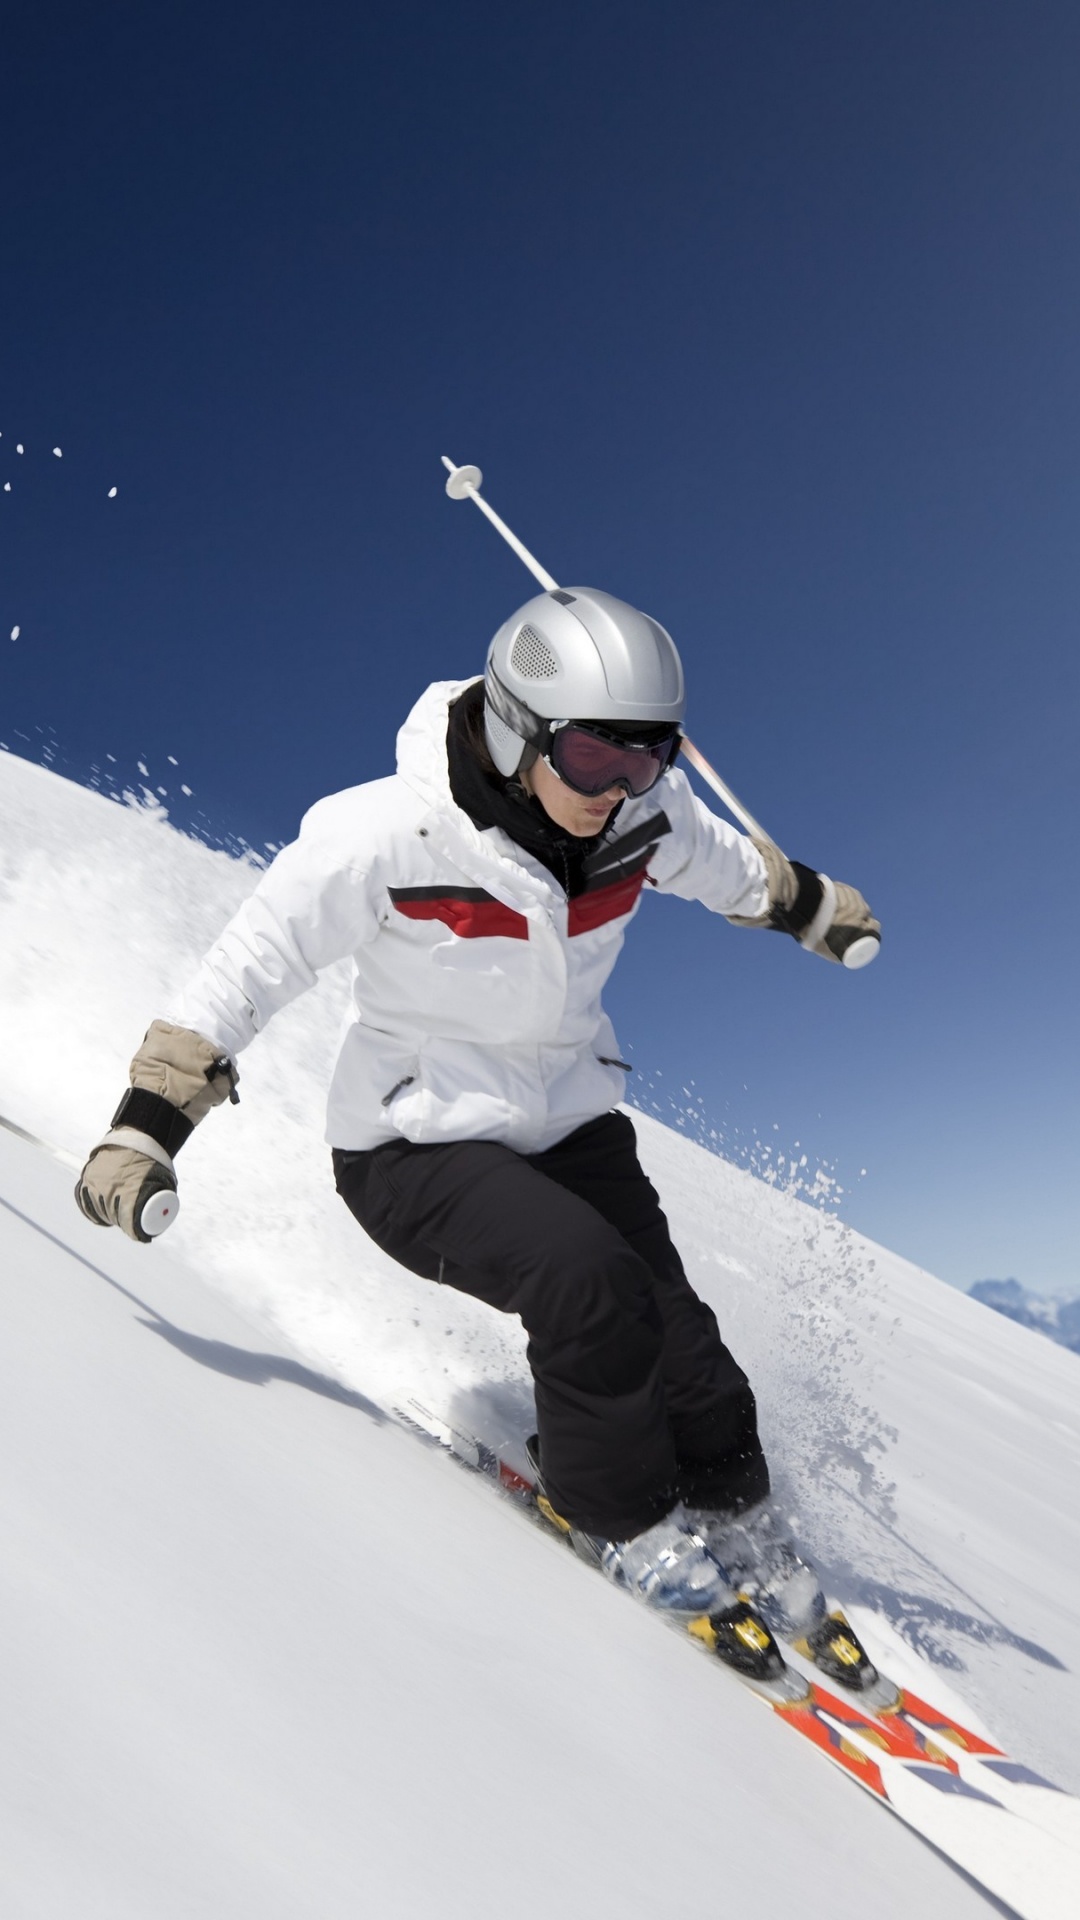 极限运动, 滑雪, 高山滑雪, 滑雪的交叉, Boardsport 壁纸 1080x1920 允许